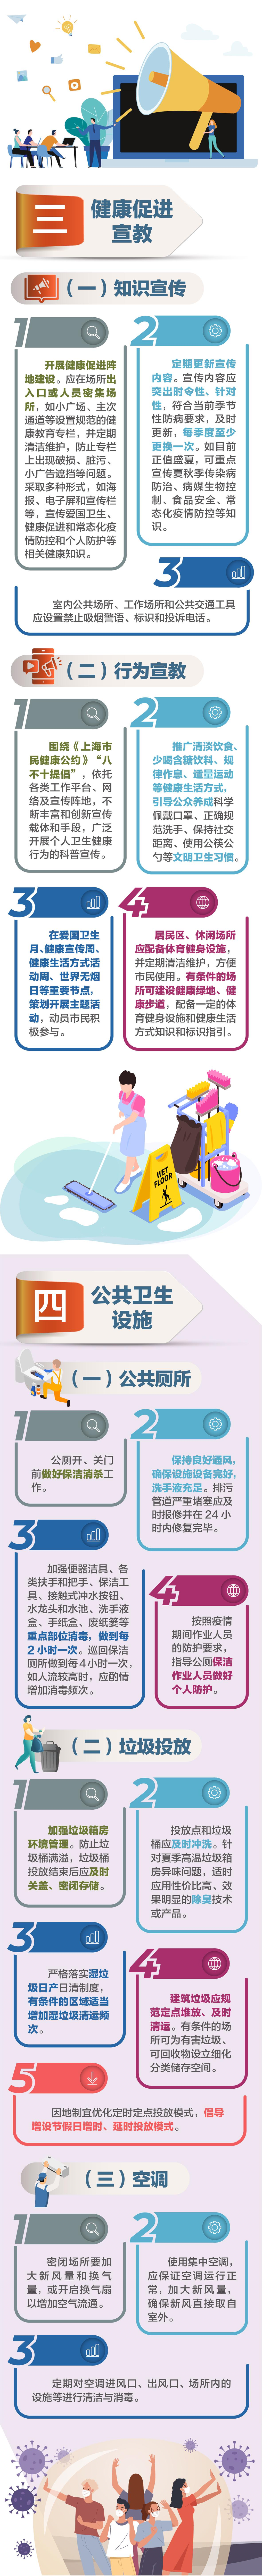 本文图片均为上海市爱国卫生运动委员会办公室提供